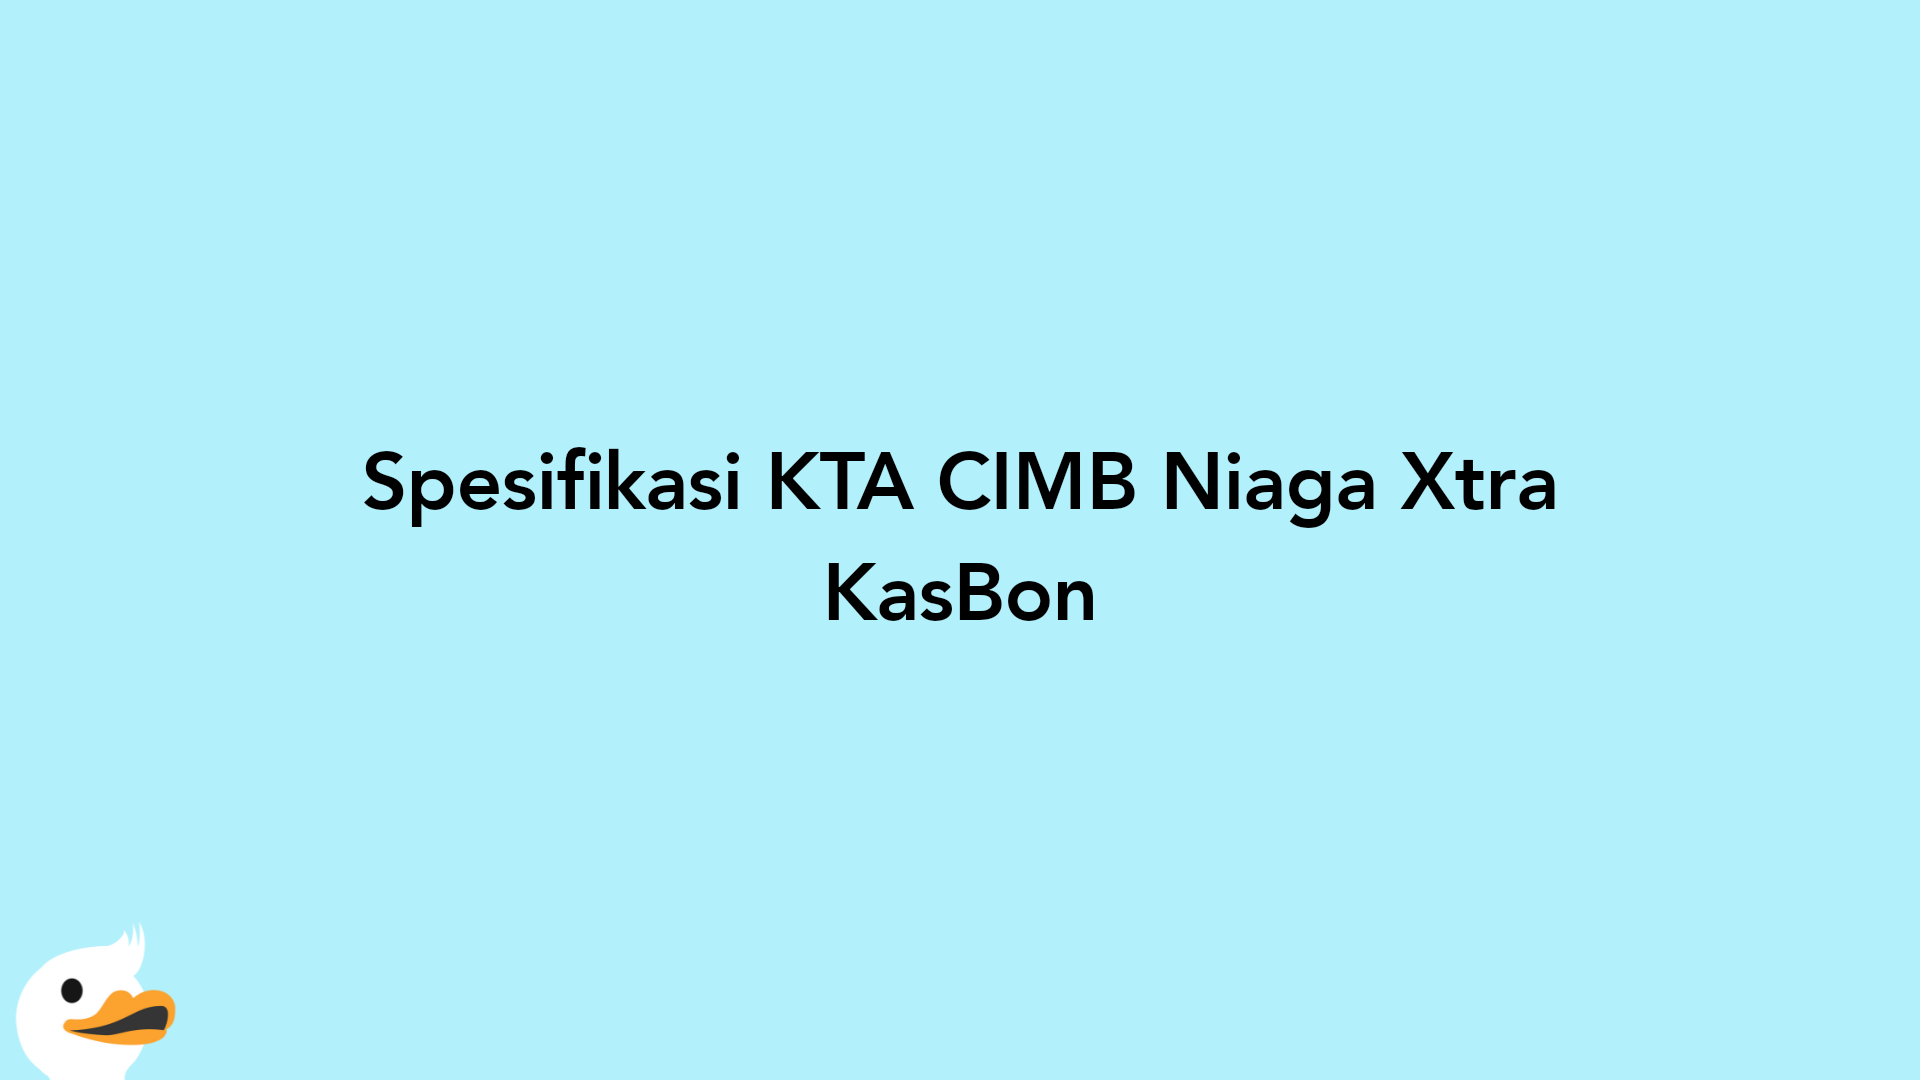 Spesifikasi KTA CIMB Niaga Xtra KasBon